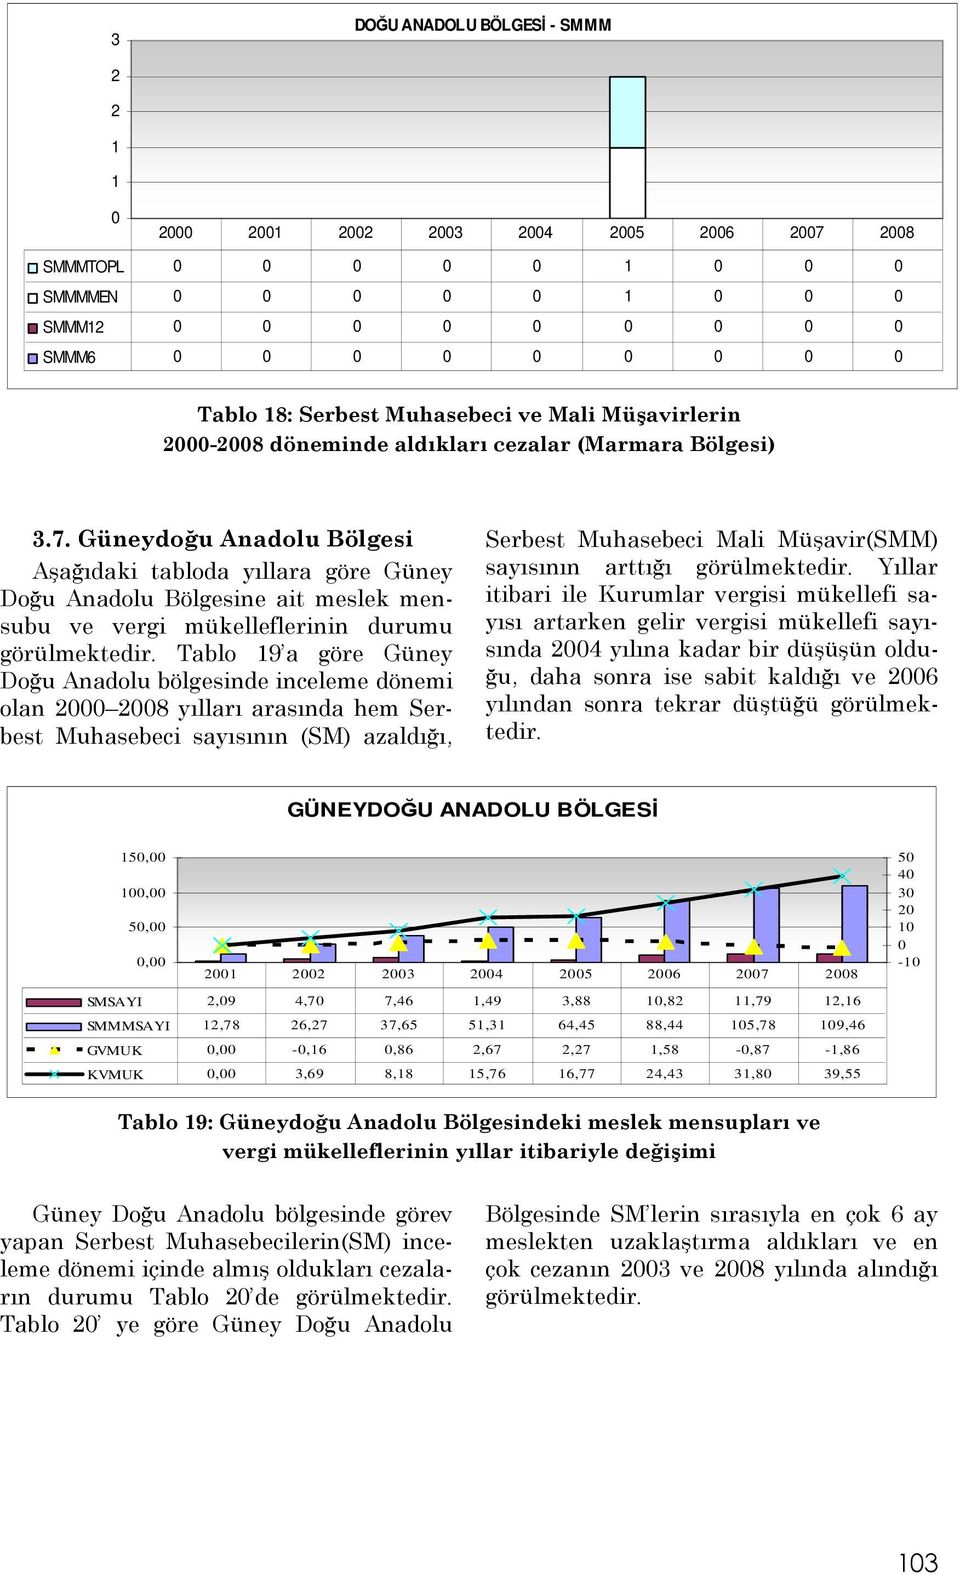 Tablo 19 a göre Güney Doğu Anadolu bölgesinde inceleme dönemi olan 2 28 yılları arasında hem Serbest Muhasebeci sayısının (SM) azaldığı, Serbest Muhasebeci Mali Müşavir(SMM) sayısının arttığı